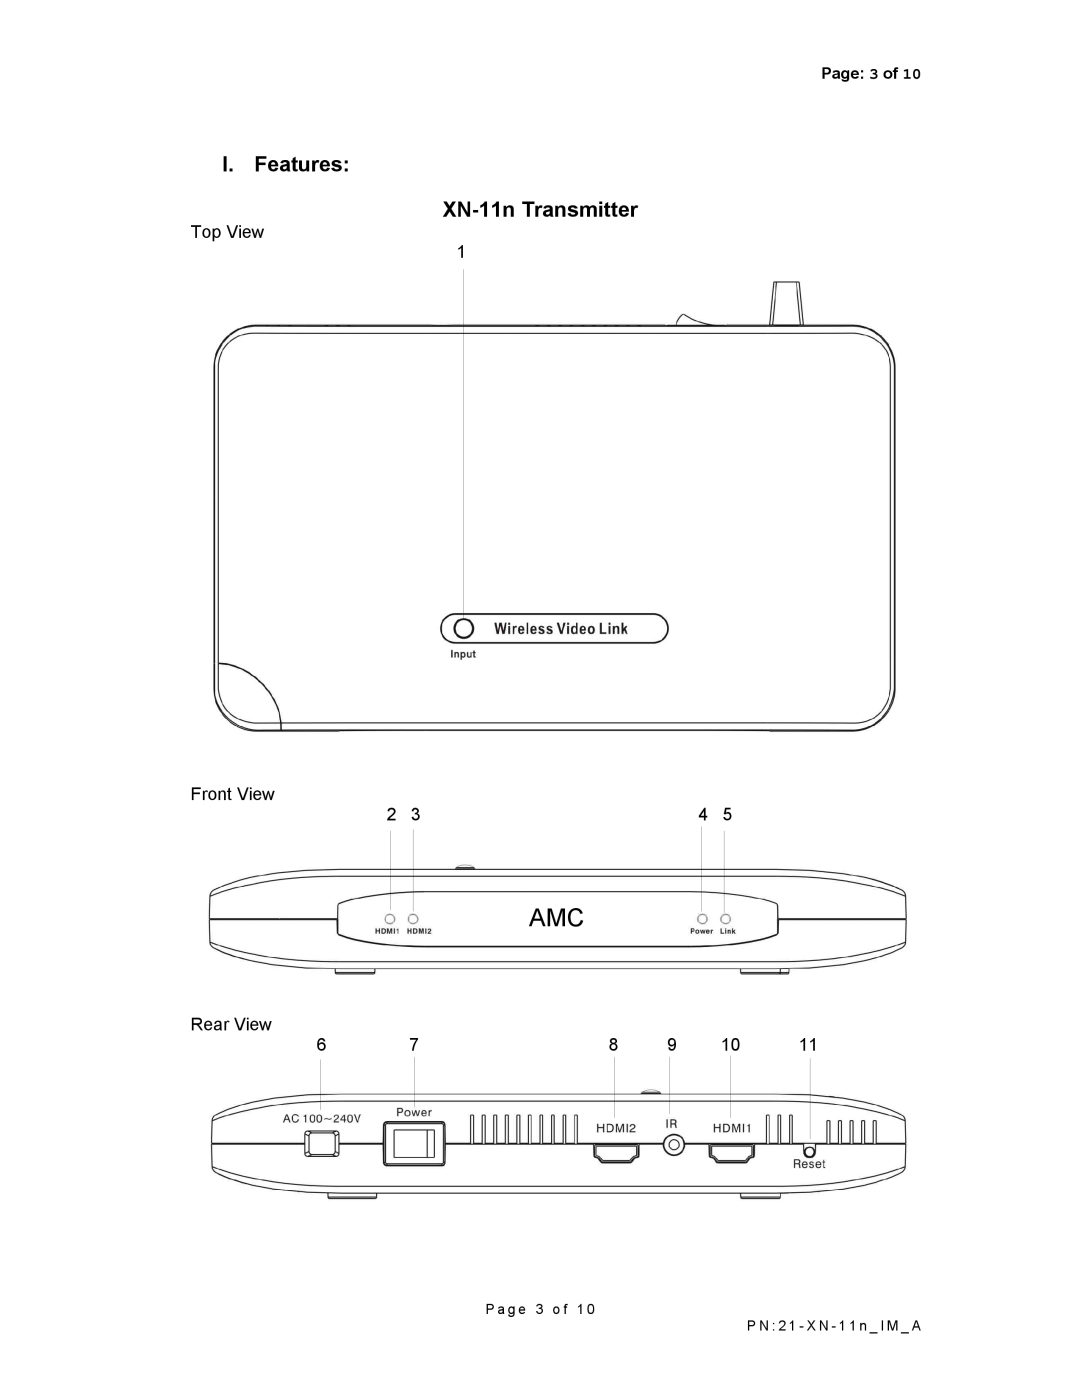 AMC manual I. Features XN-11nTransmitter 